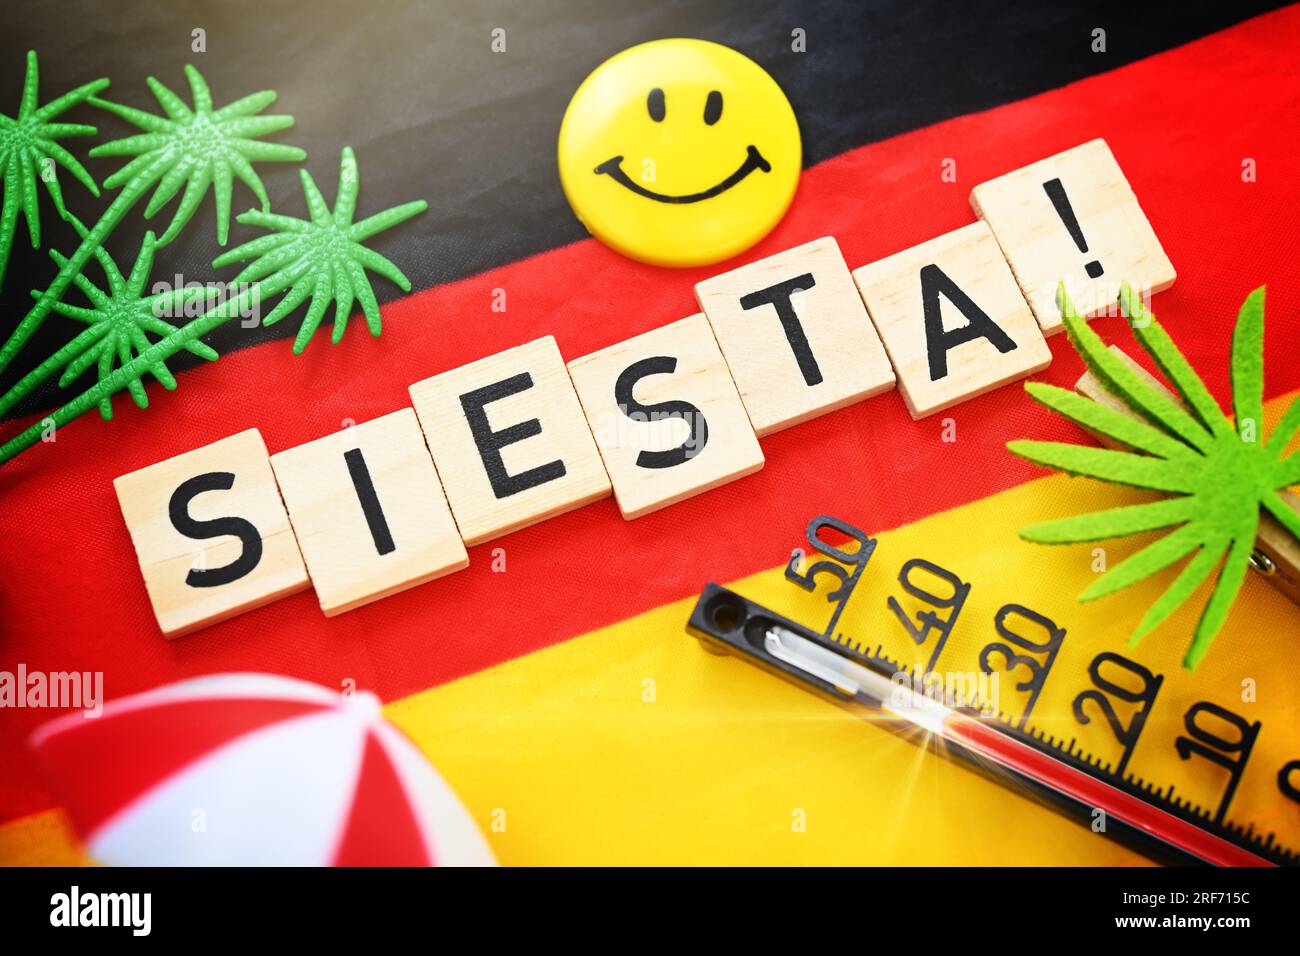 Schriftzug Siesta! auf einer Deutschlandfahne Stock Photo